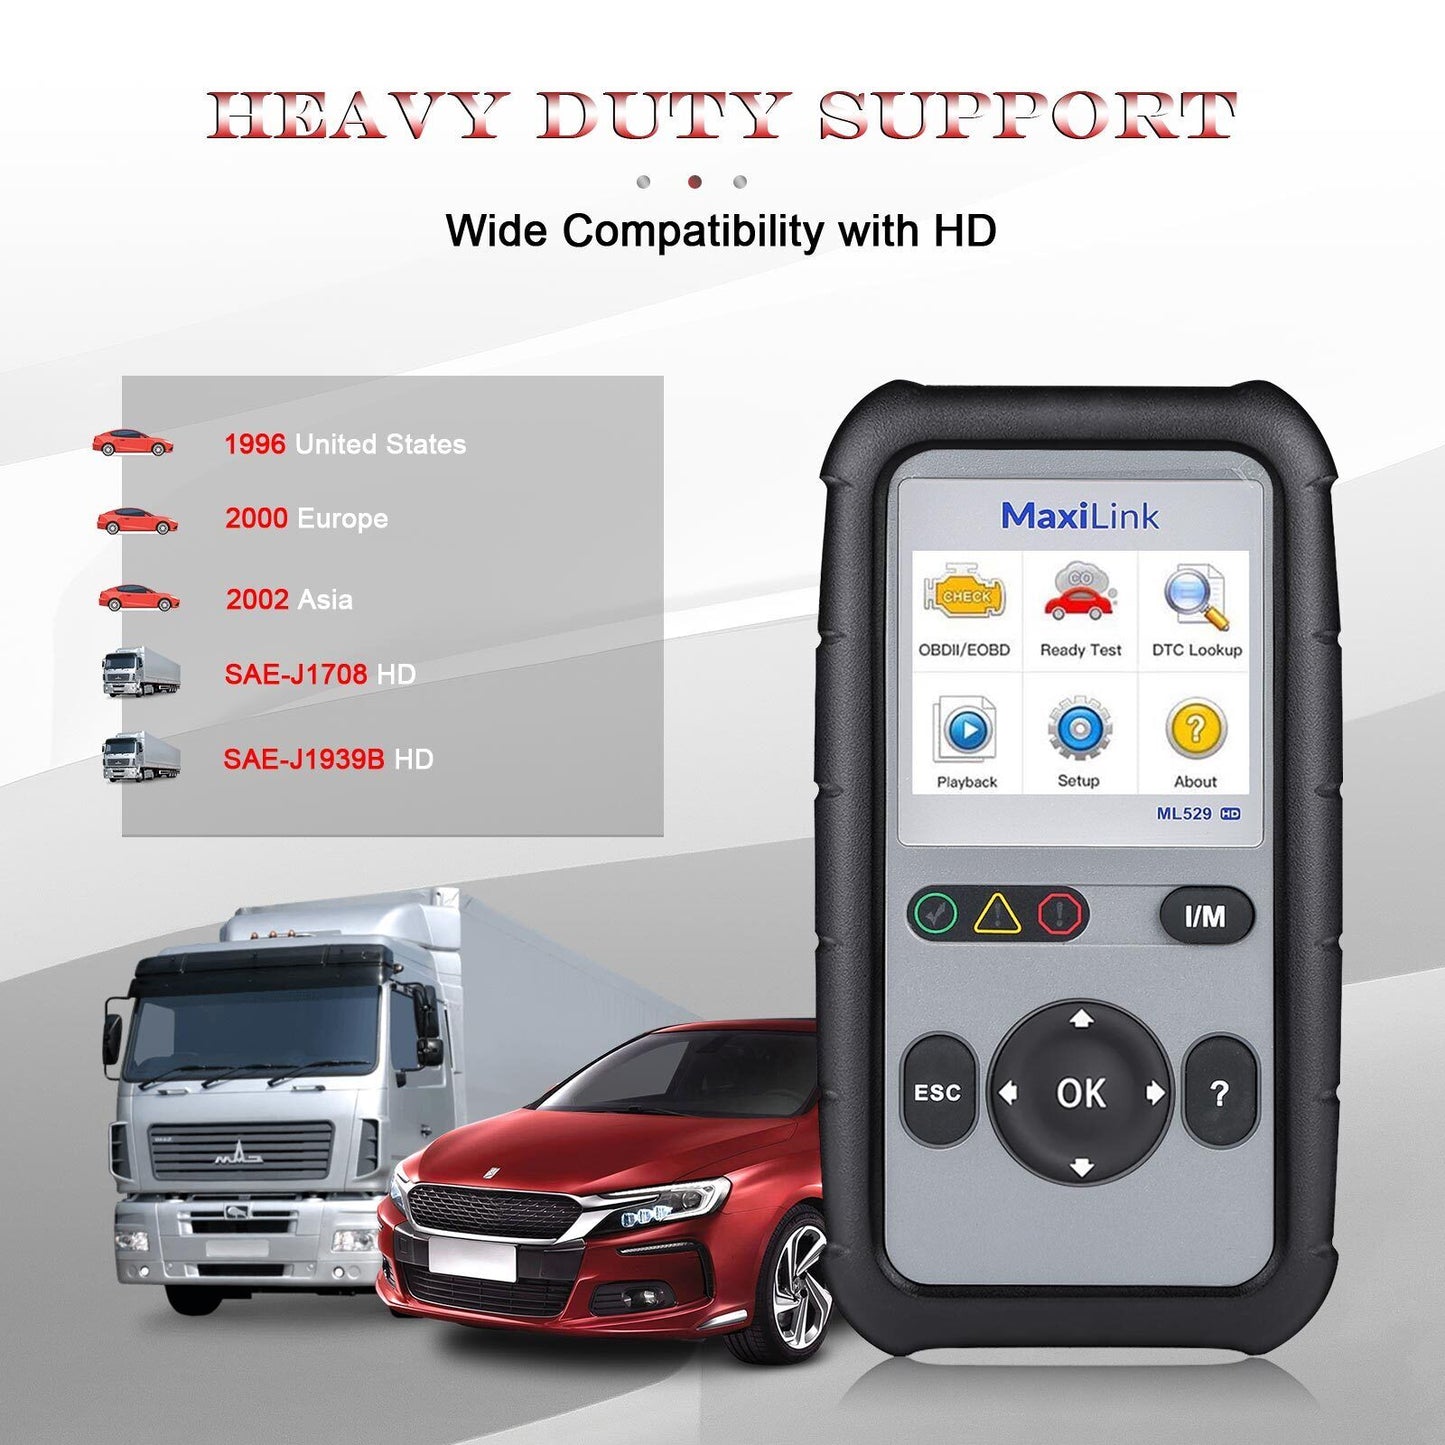 AUTEL MaxiLink ML529HD Heavy Duty kodelæser bil OBD2 scanner lastbiler